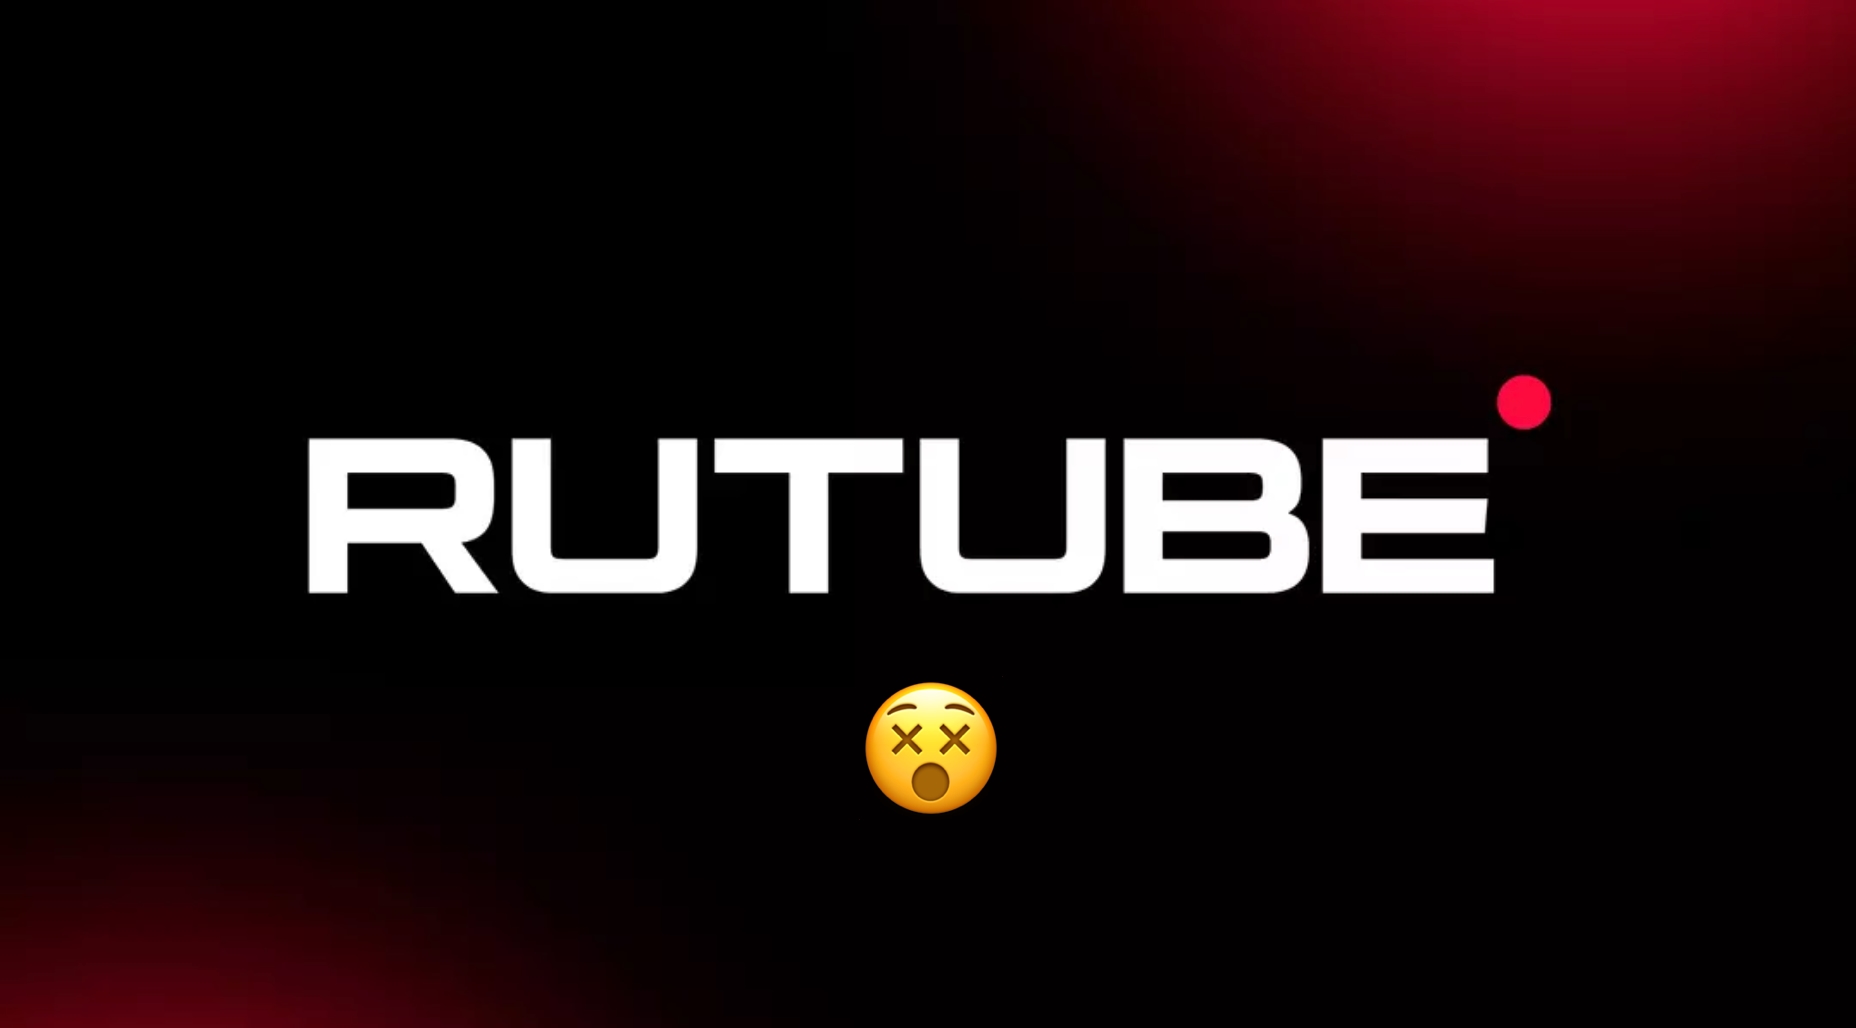 Źródło: hakerzy usunęli witrynę rosyjskiego wideo hostującego RuTube